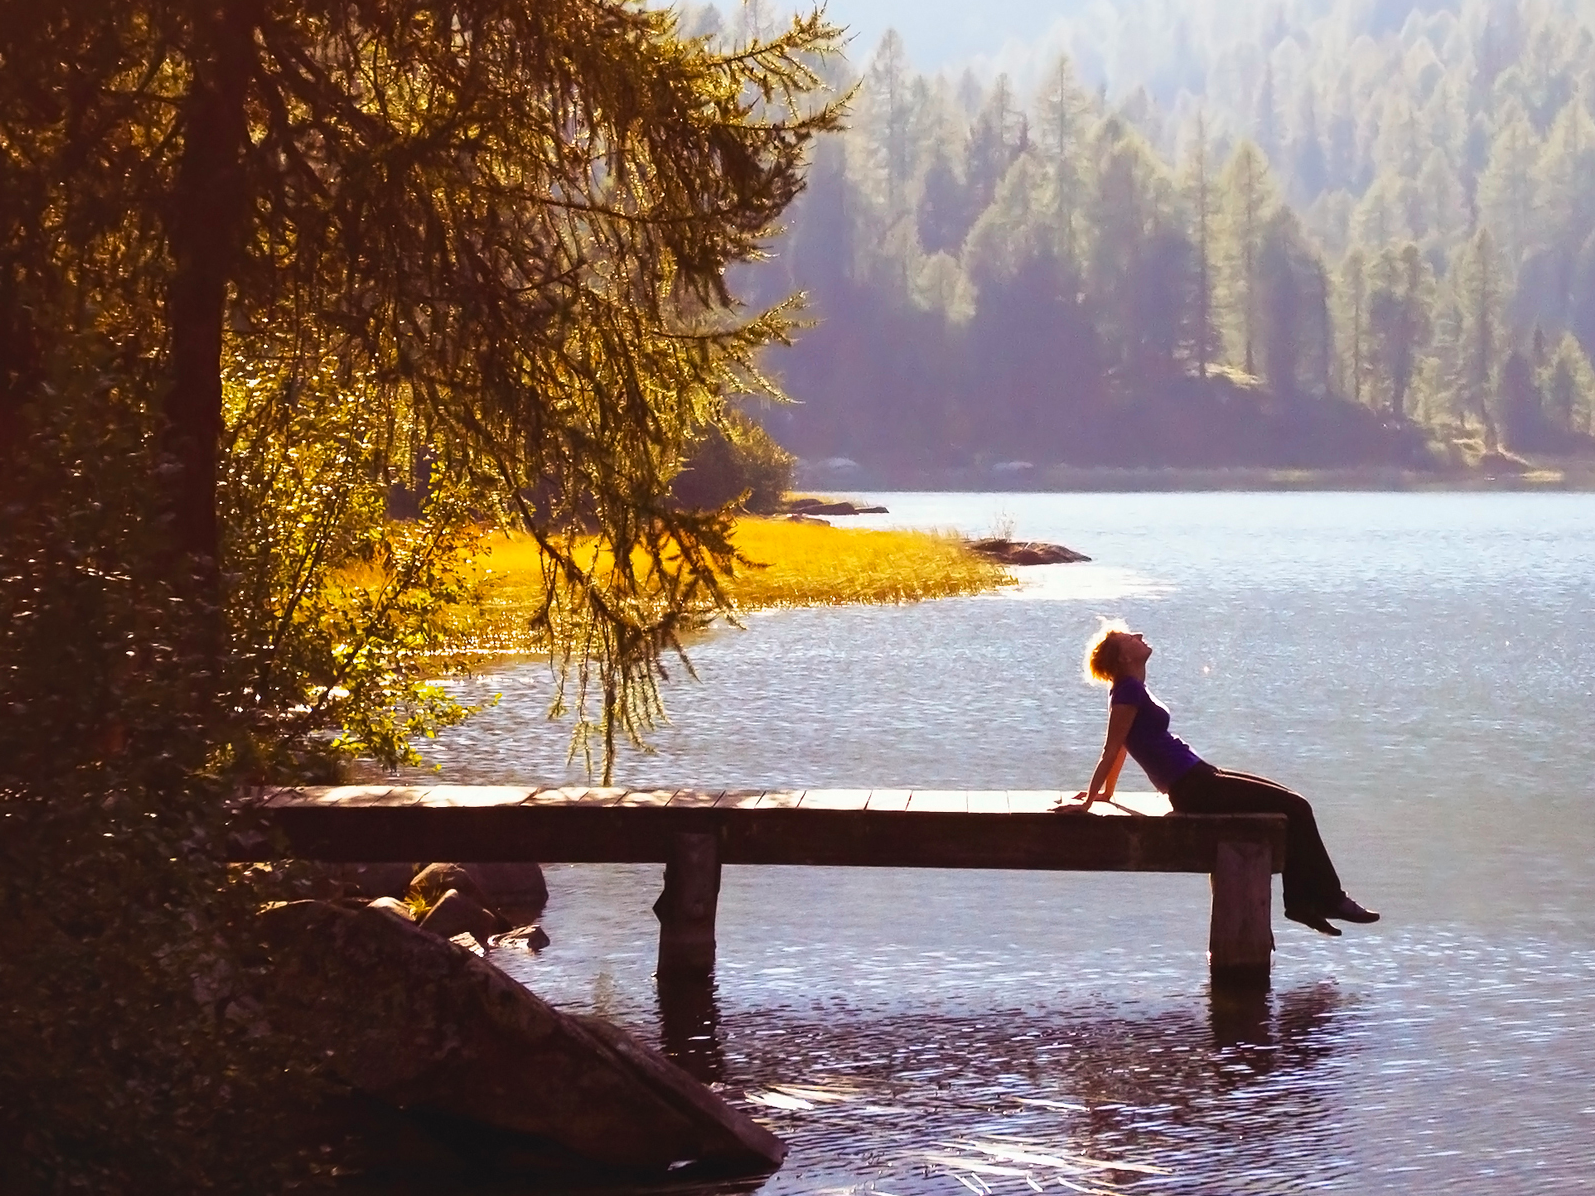 Мир души слушать. Природа спокойствие. Уединение на фоне озера. Природа умиротворение и спокойствие. Душевный покой.